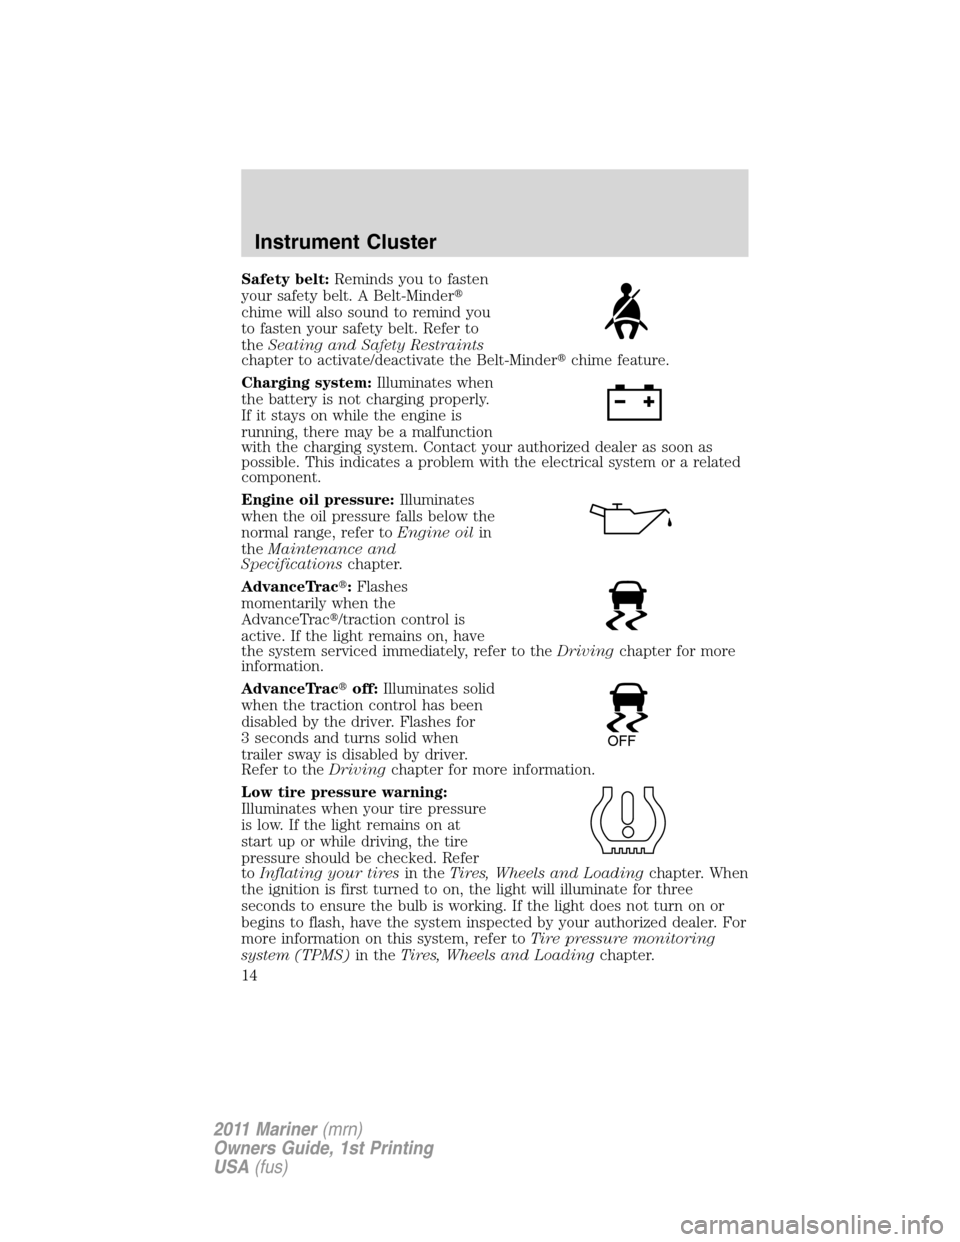 Mercury Mariner 2011  s User Guide Safety belt:Reminds you to fasten
your safety belt. A Belt-Minder
chime will also sound to remind you
to fasten your safety belt. Refer to
theSeating and Safety Restraints
chapter to activate/deactiv